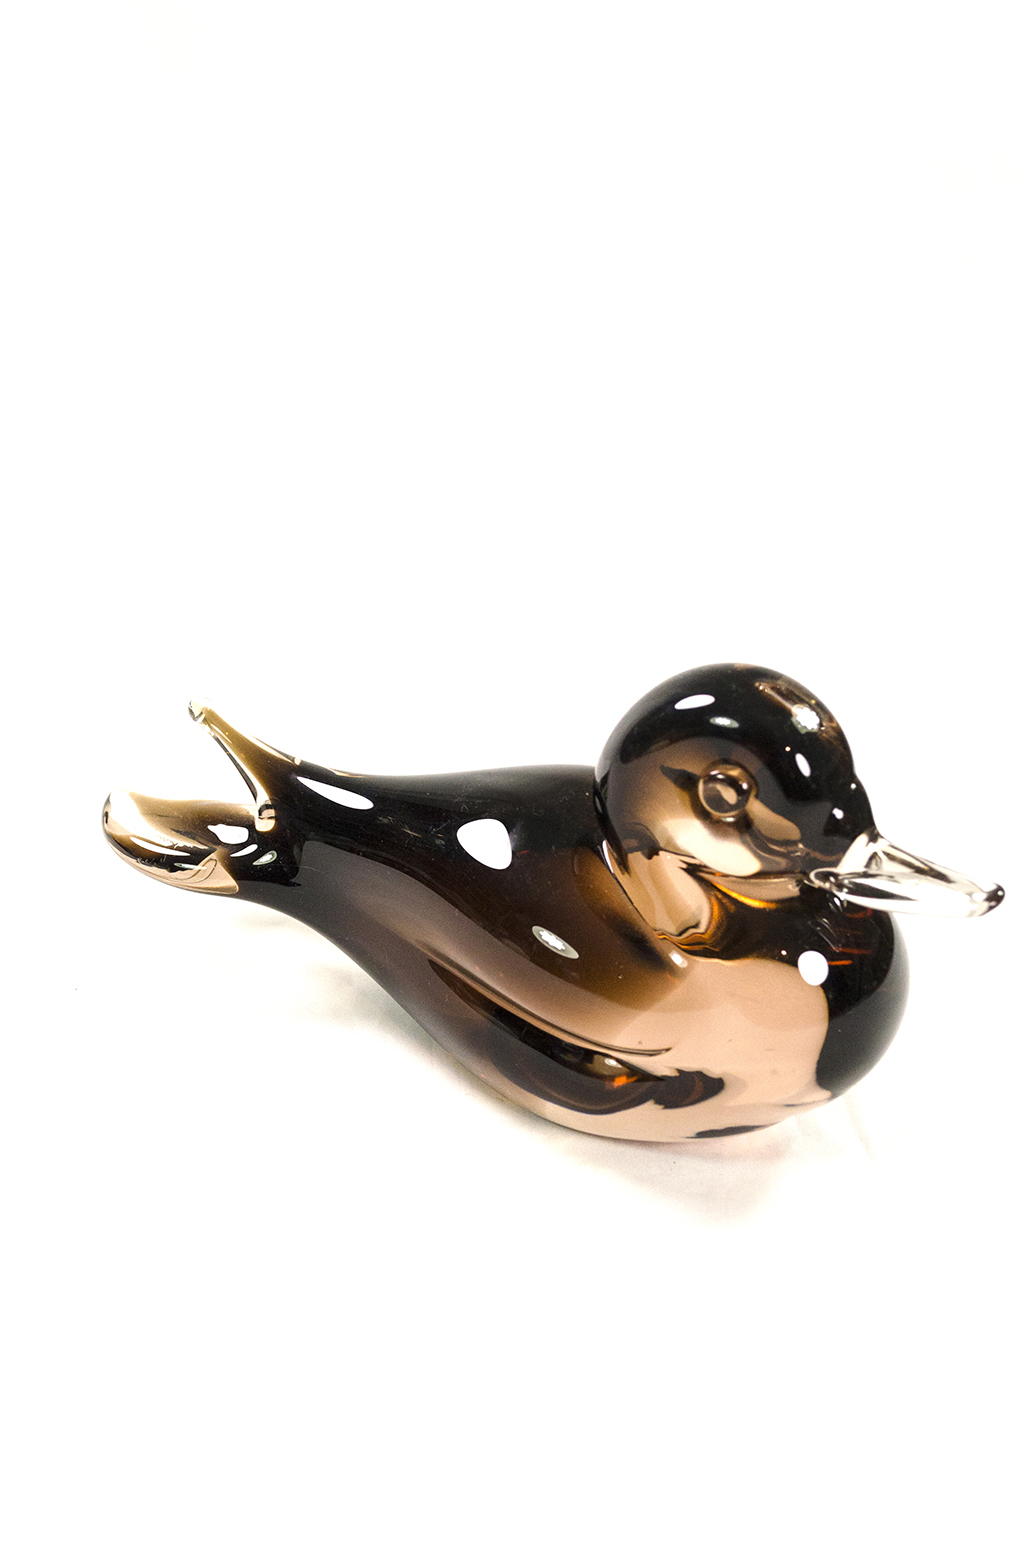 Glass Murano duck